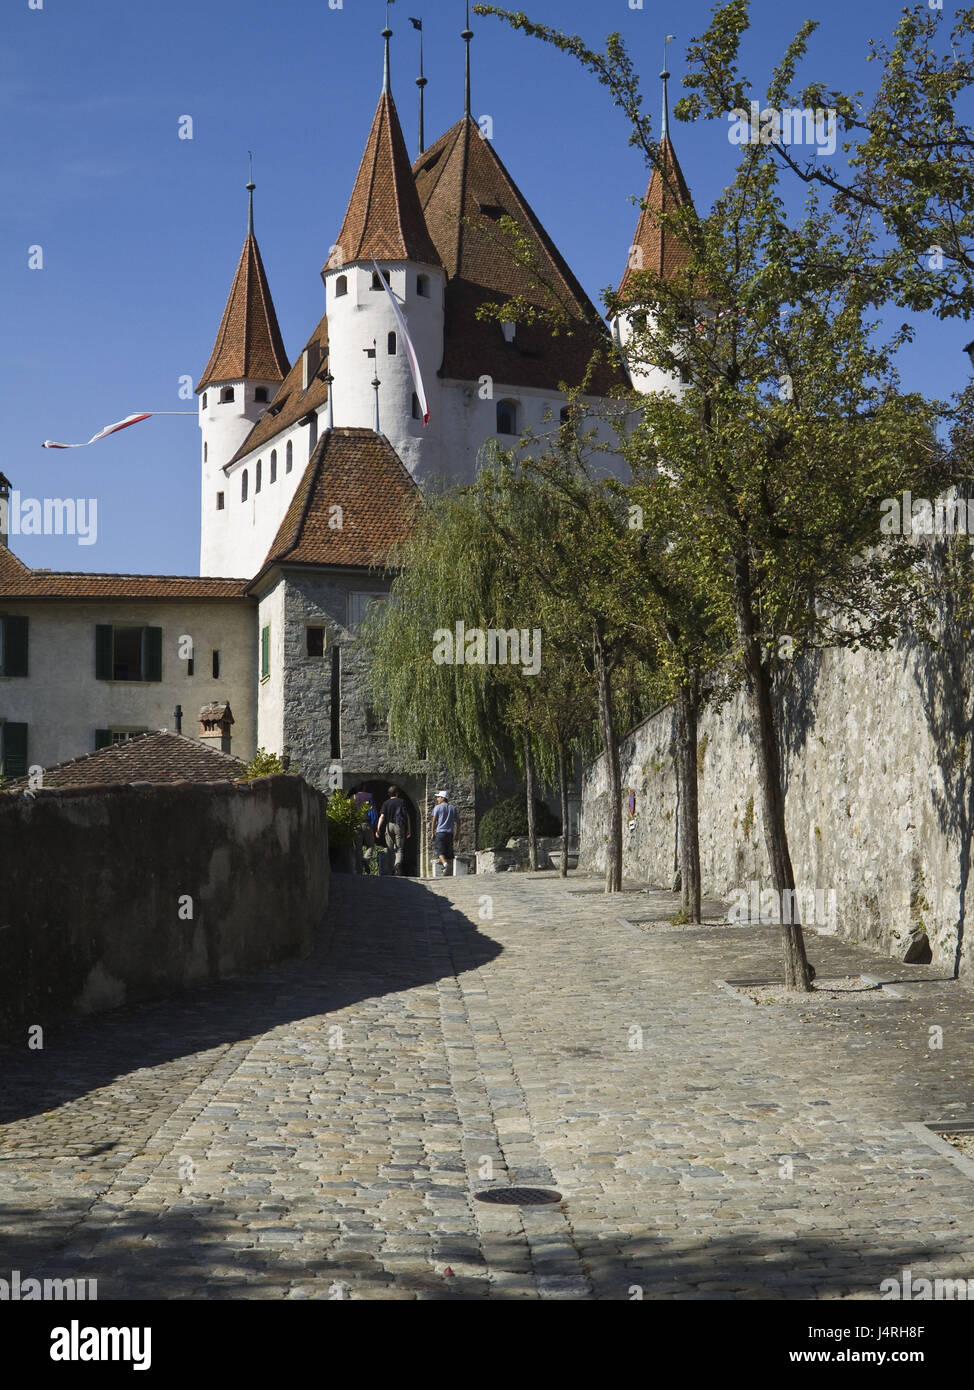 Bloccare Thun, modo per il portale principale, light tuning, estivo, calorosamente, Svizzera, Canton Berna, città di Thun, turistiche, nessun modello di rilascio, Foto Stock